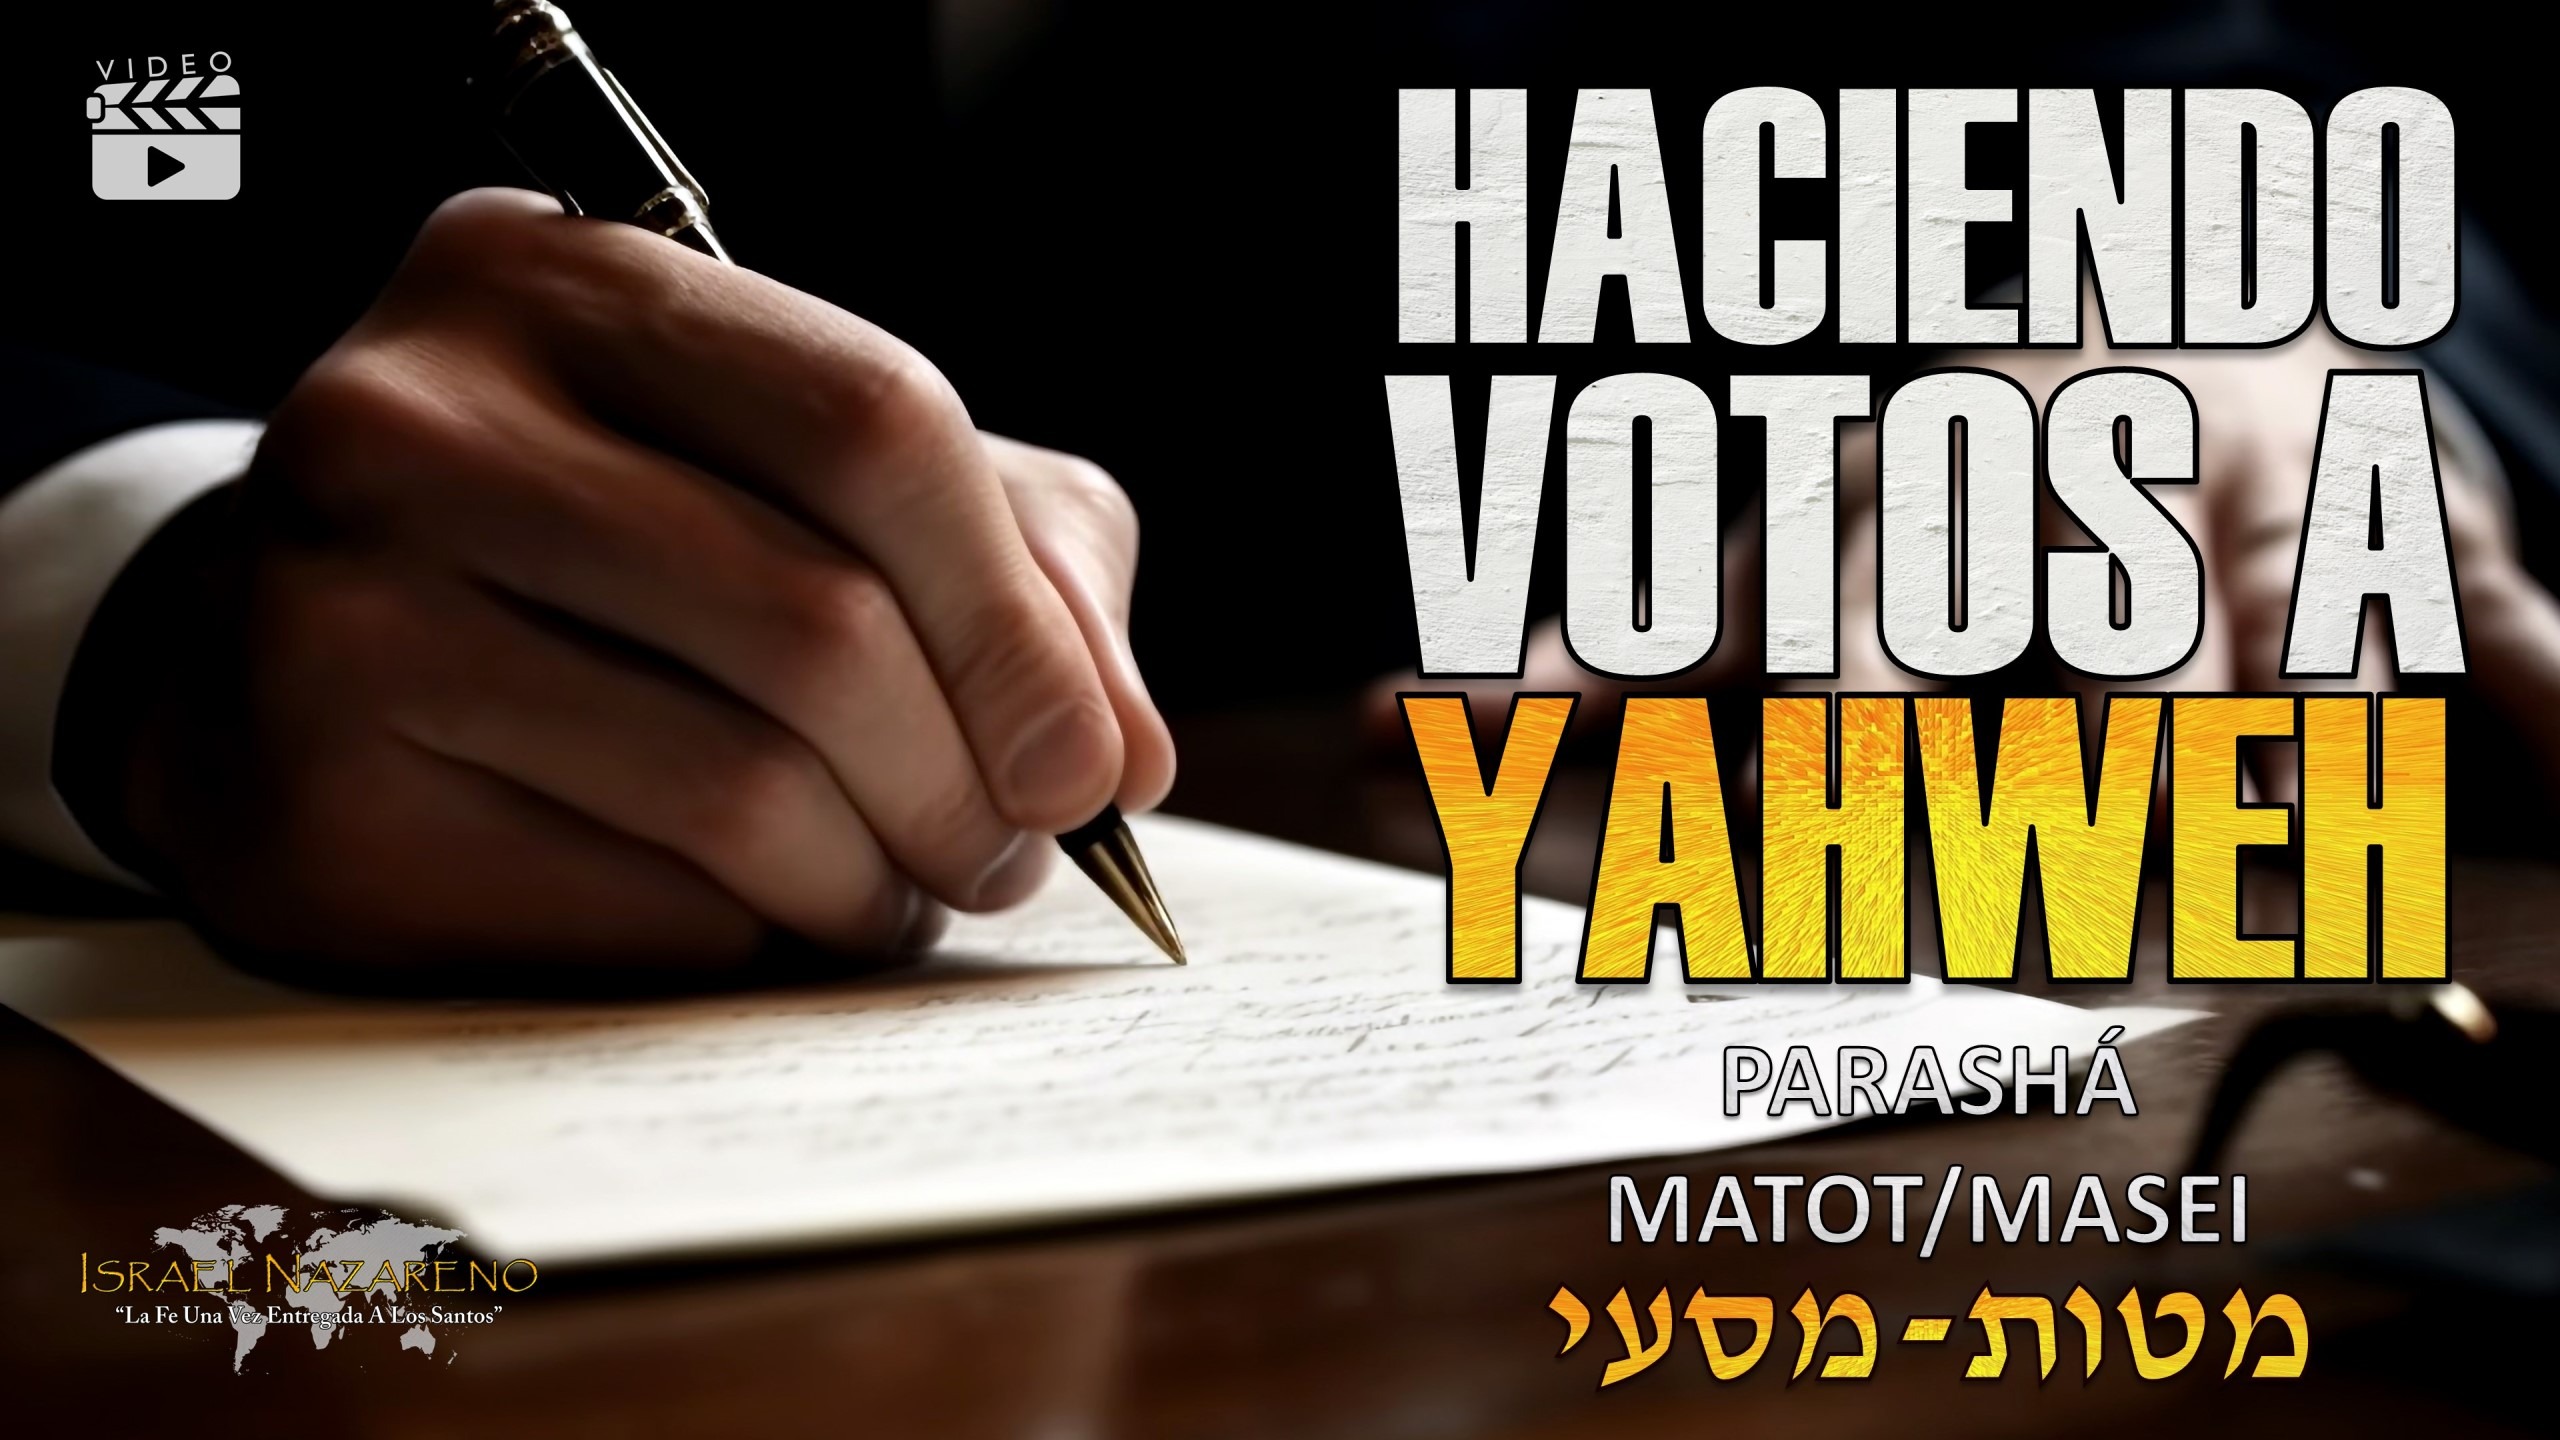 Parashá Matot/Masei – Haciendo Votos a Yahweh